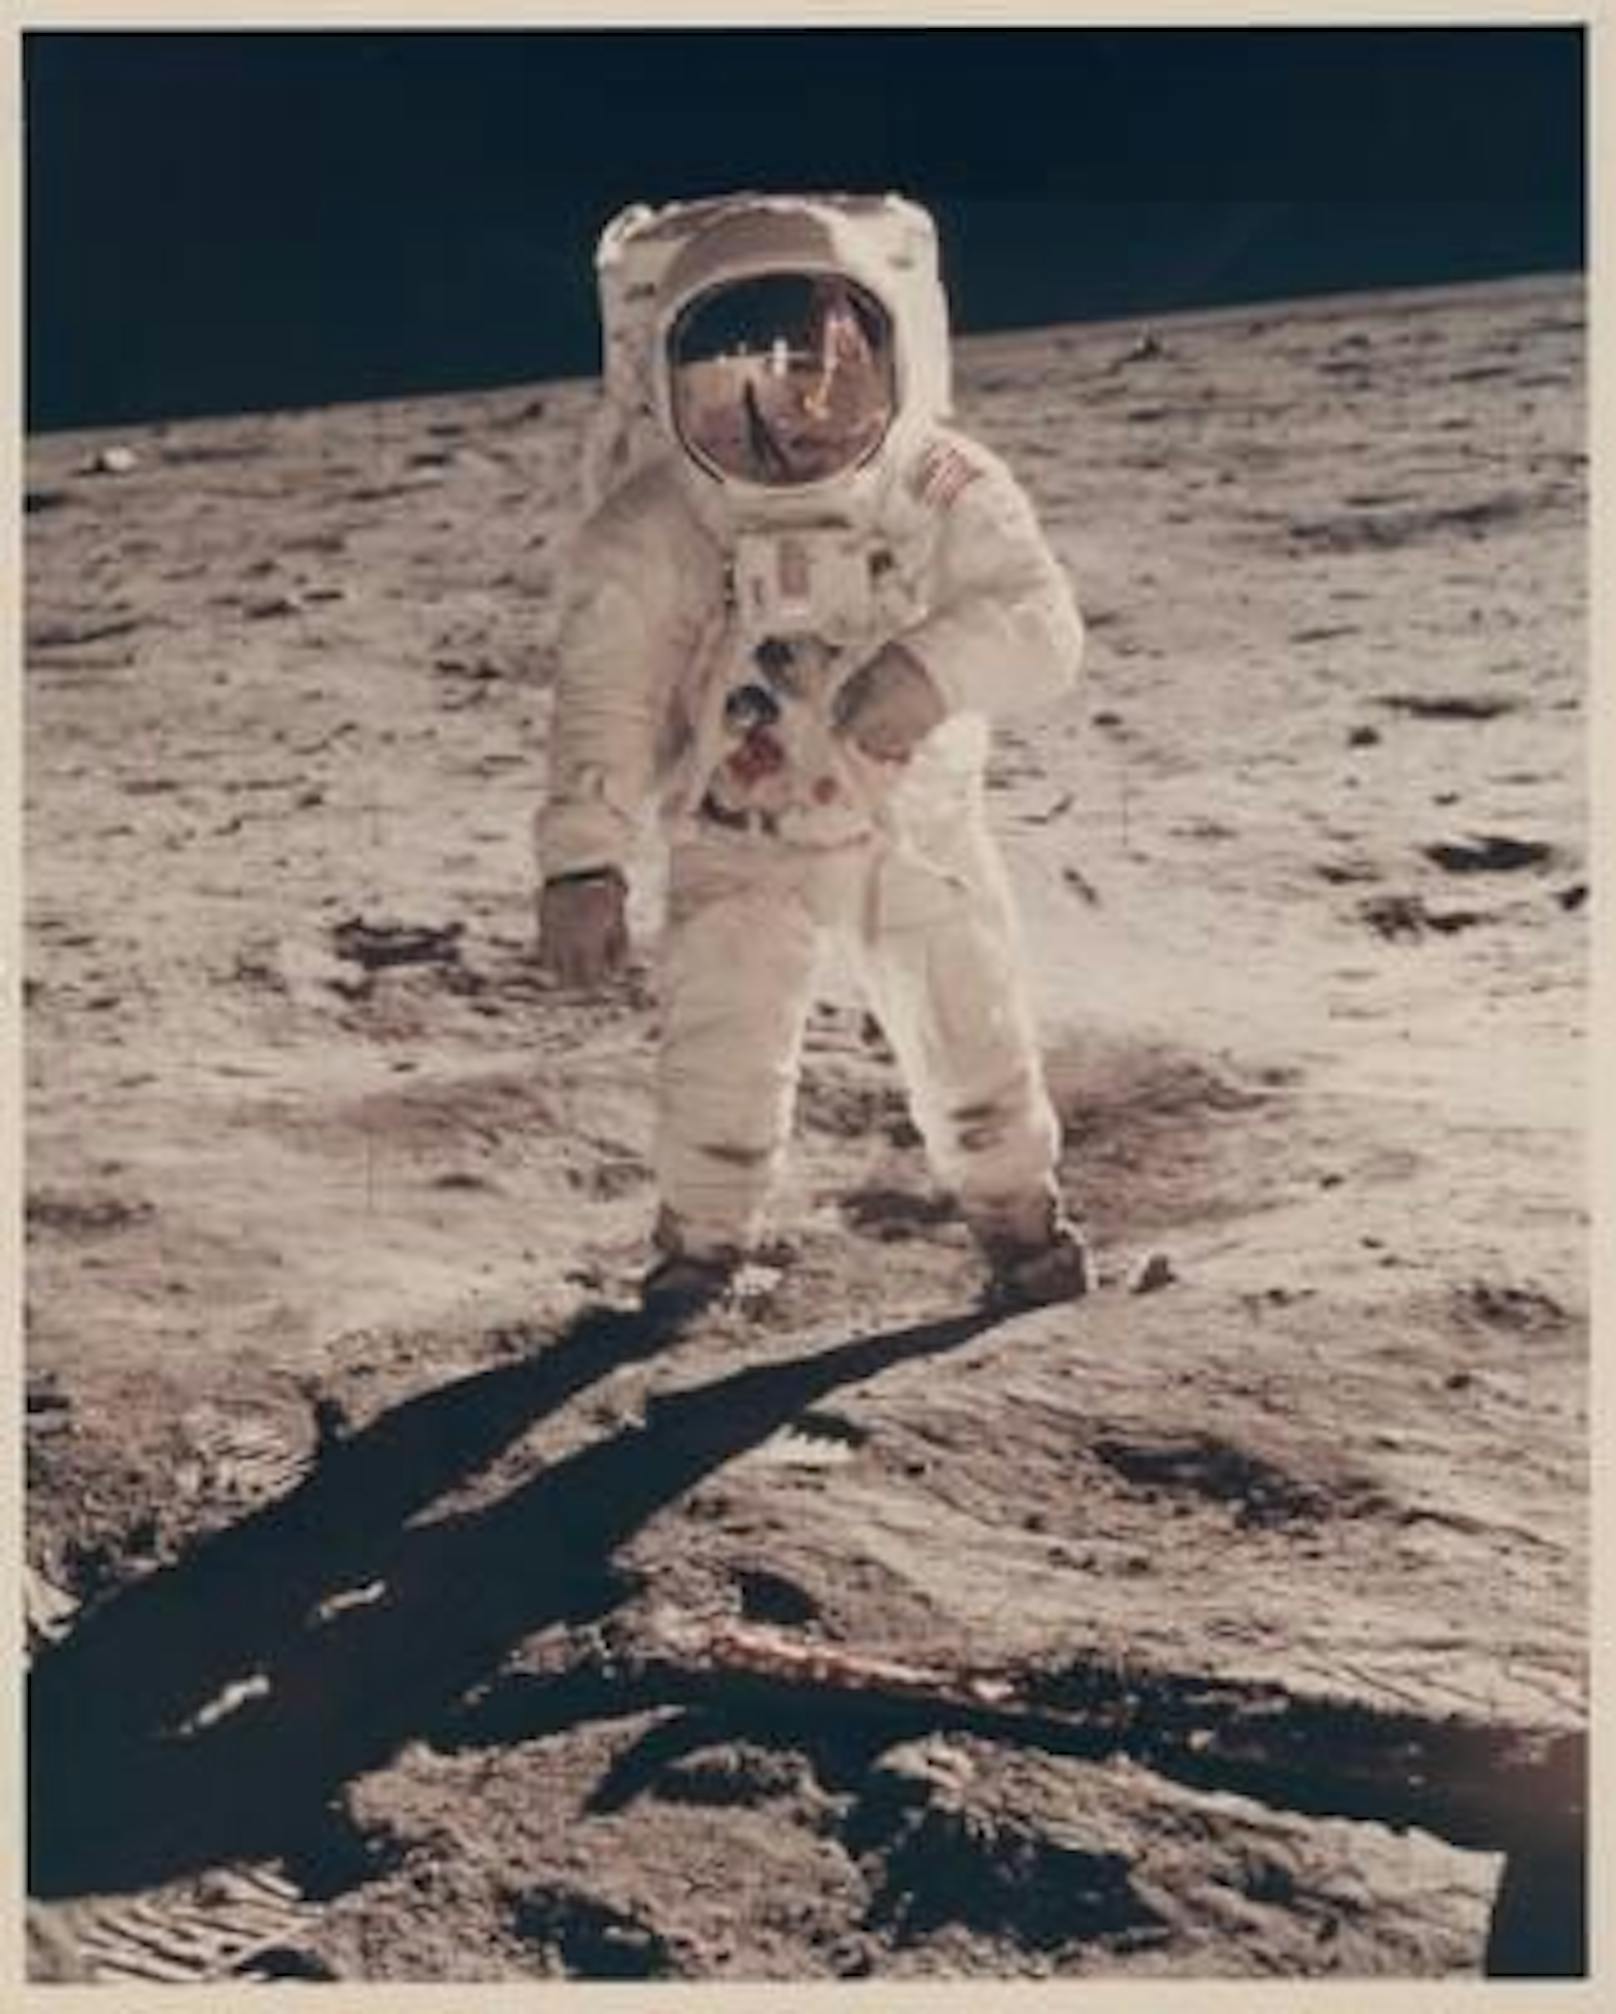 Apollo 11: "Earthrise" - das Herzstück der Sammlung. Die vergoldete Sonnenblende von Buzz Aldrin spiegelt den Fotografen Neil Armstrong und den LM Eagle wider. Erzielter Preis: 40.000 DKK (5.373 Euro).